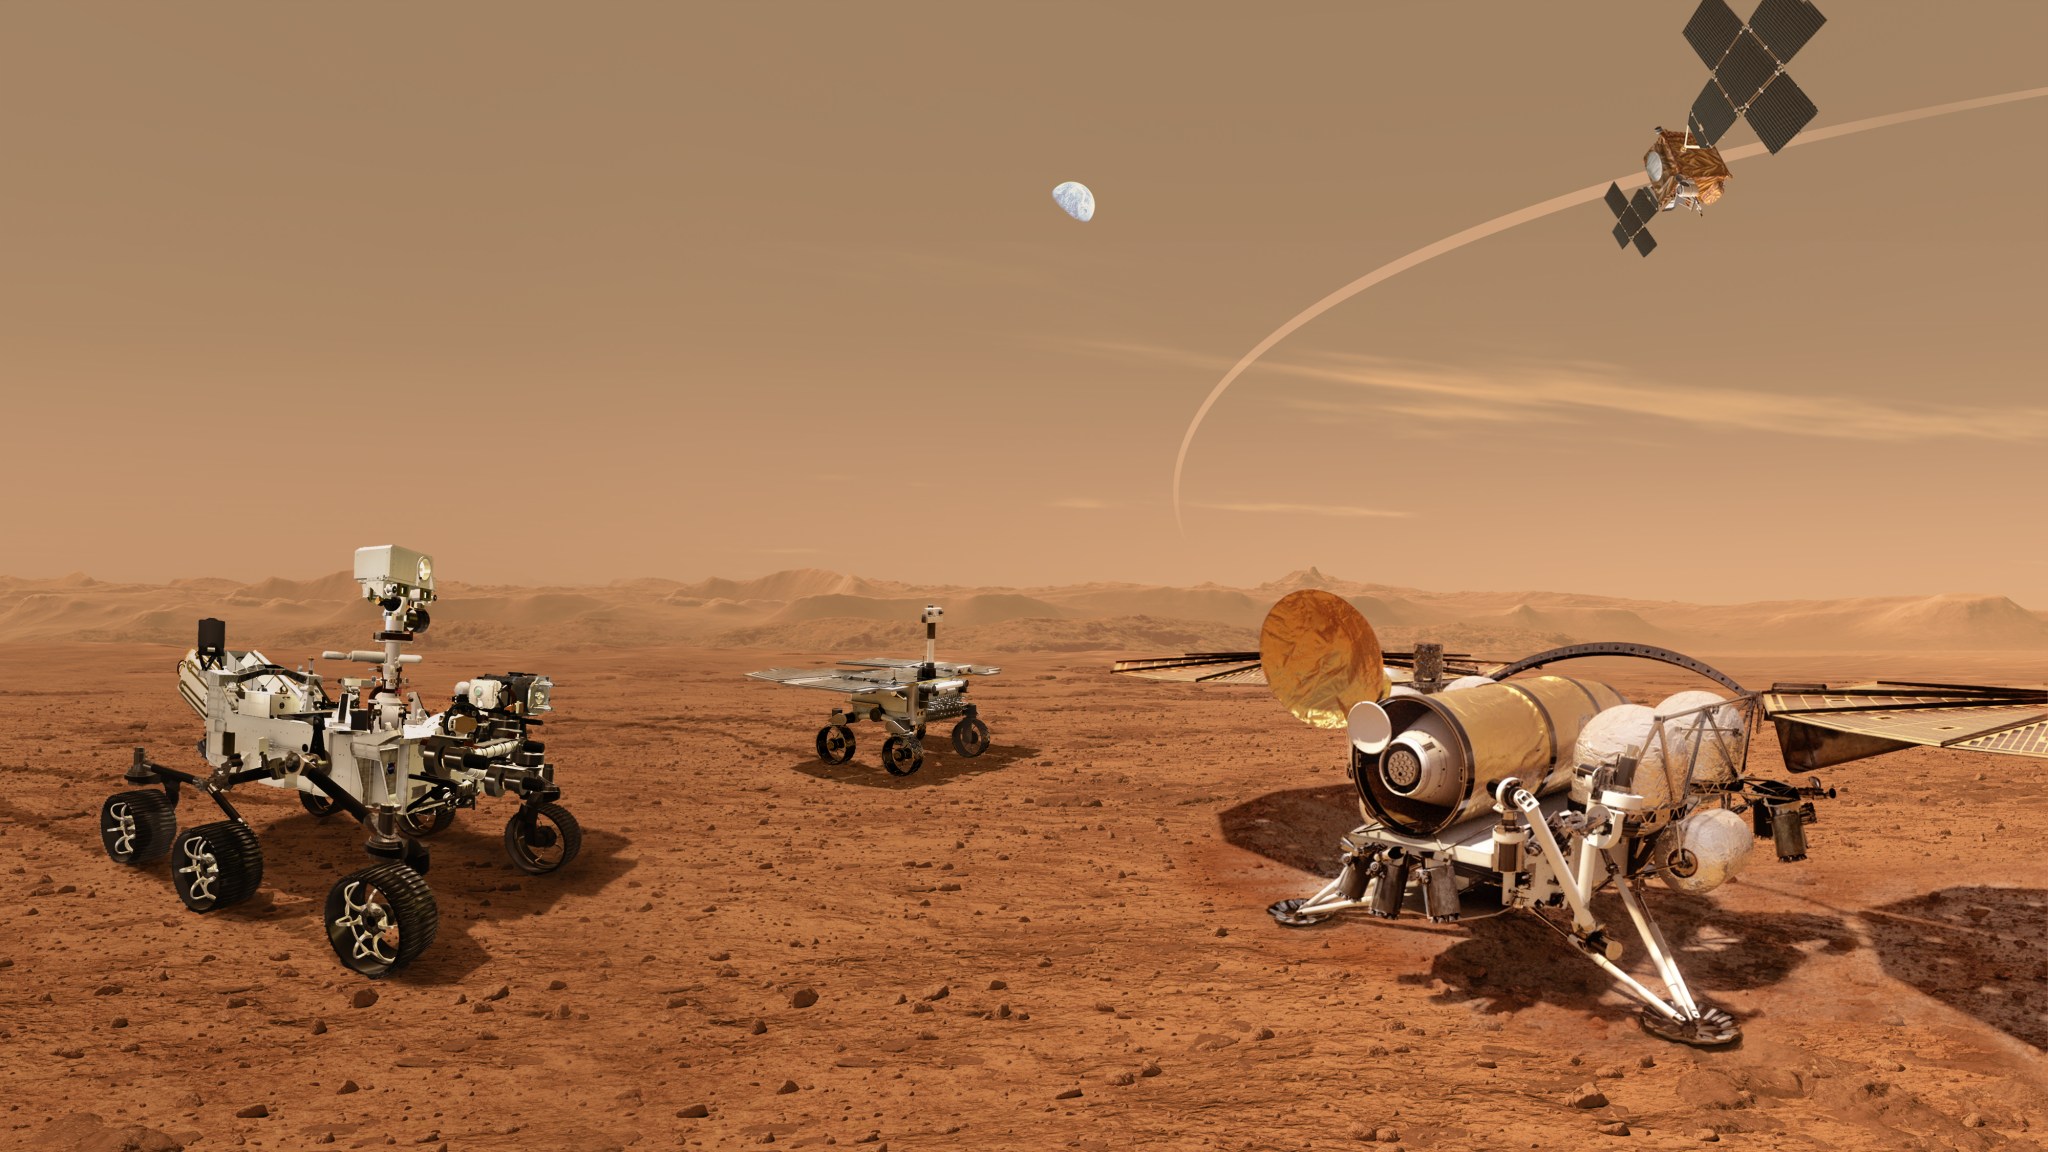 Illustration of multiple robotic landers on Mars surface.